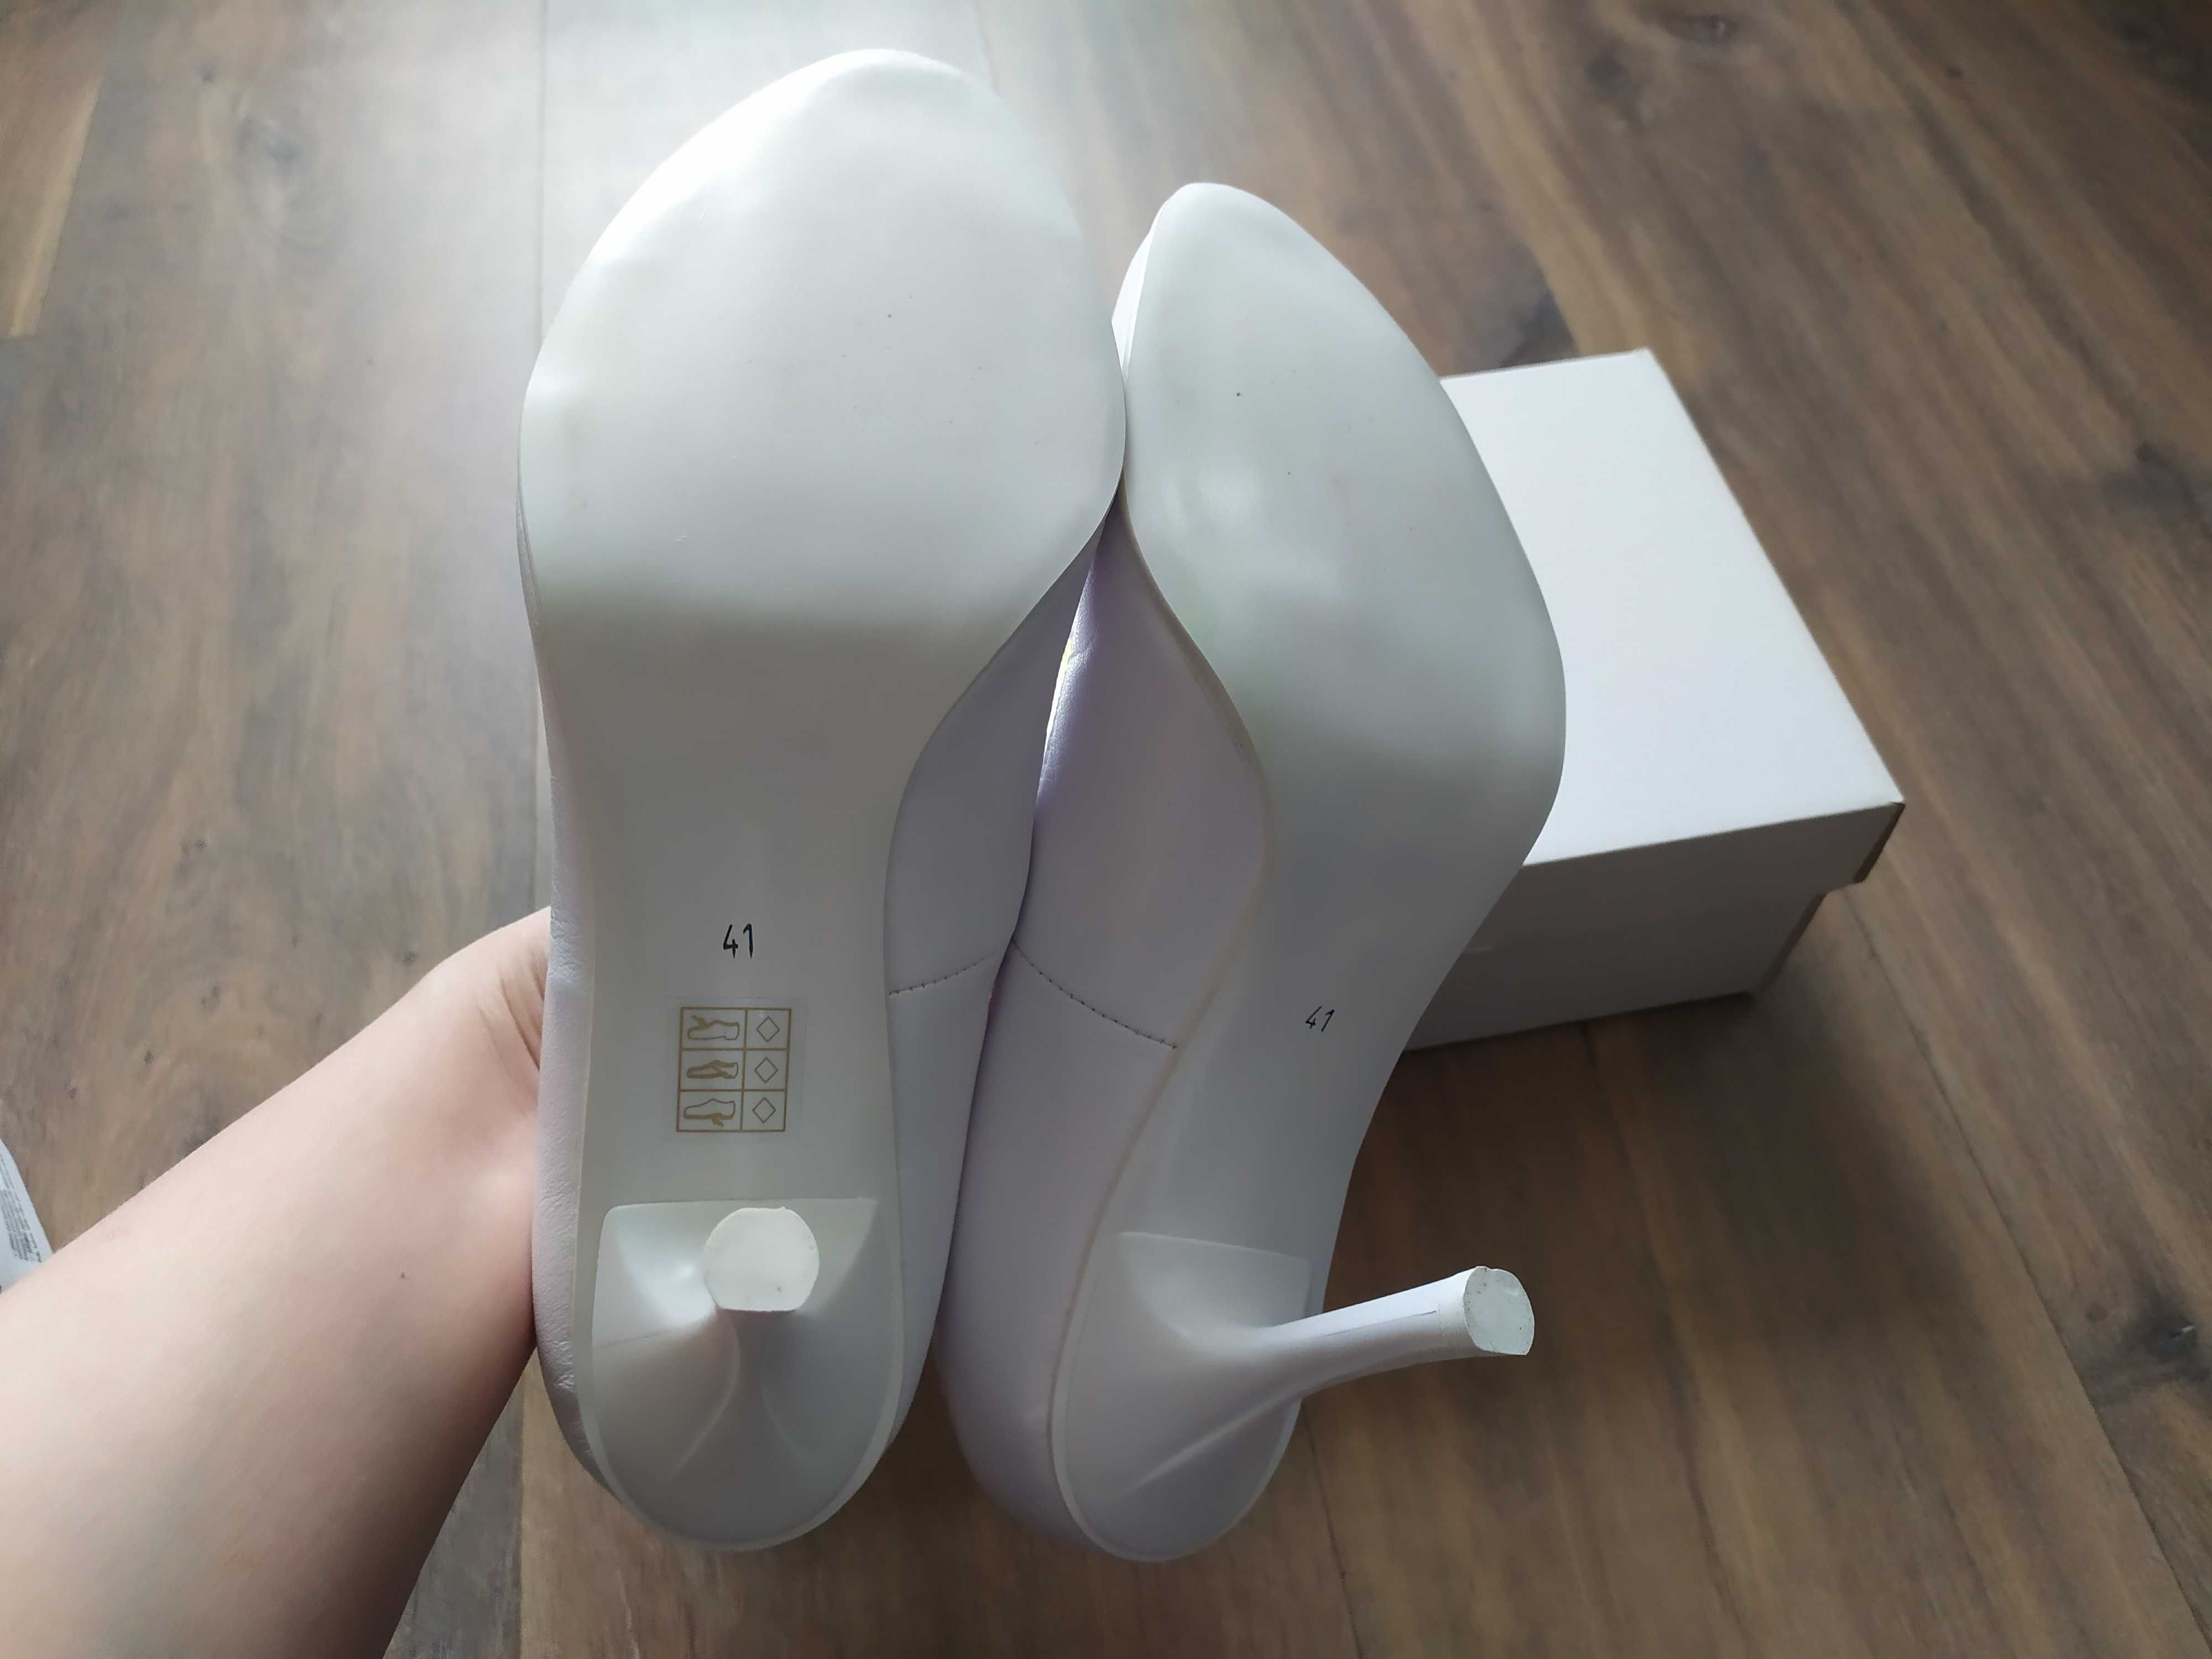 Nieużywane buty Witt białe slubne - 41 Powystawowe model 107 czółenka